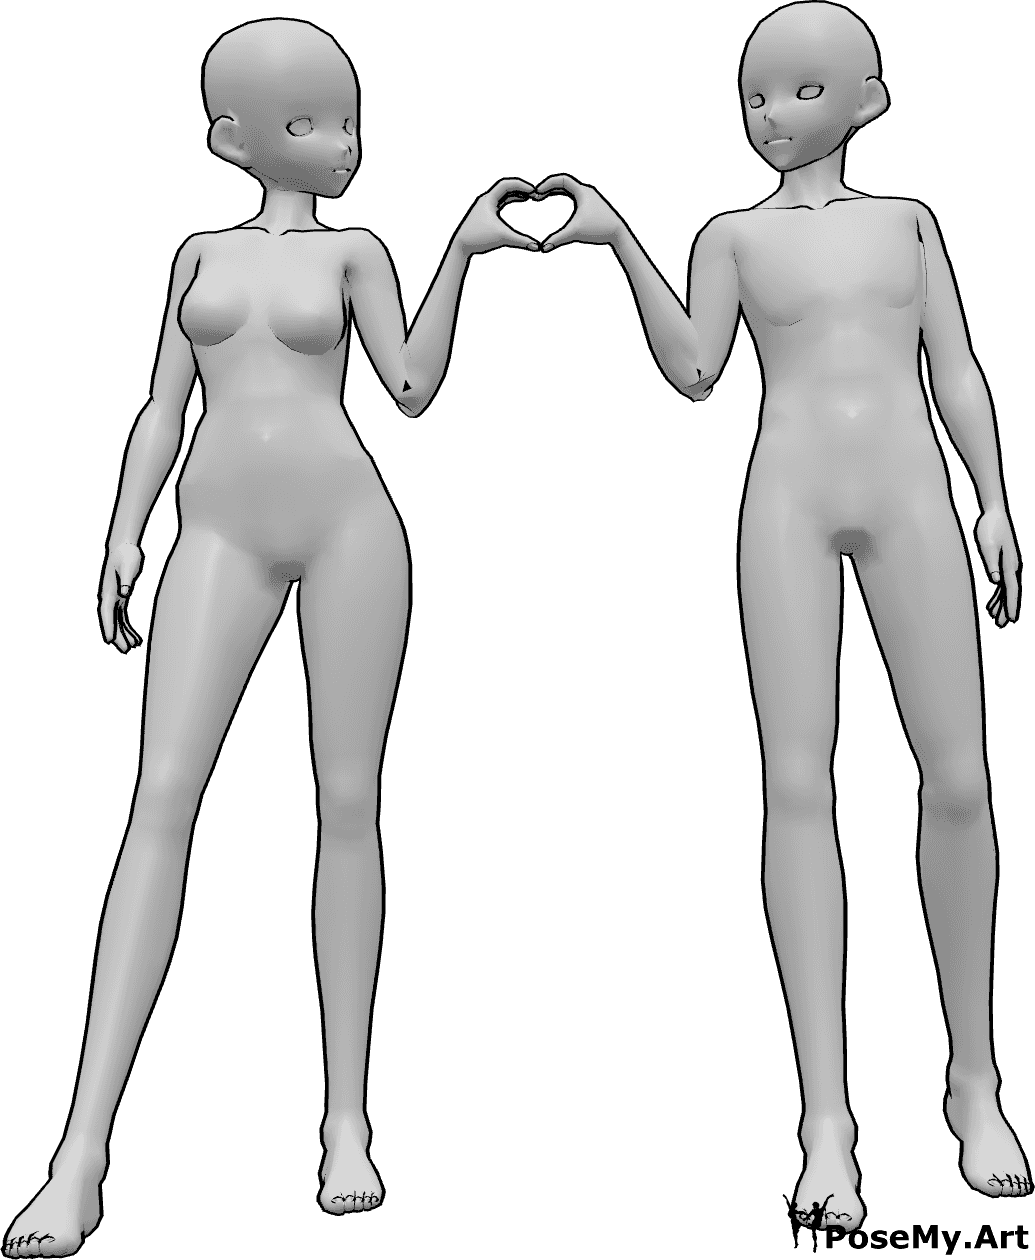 Posen-Referenz- Weiblich männlich Herz Pose - Anime weiblich und männlich stehen nebeneinander und bilden ein Herz mit ihren Händen